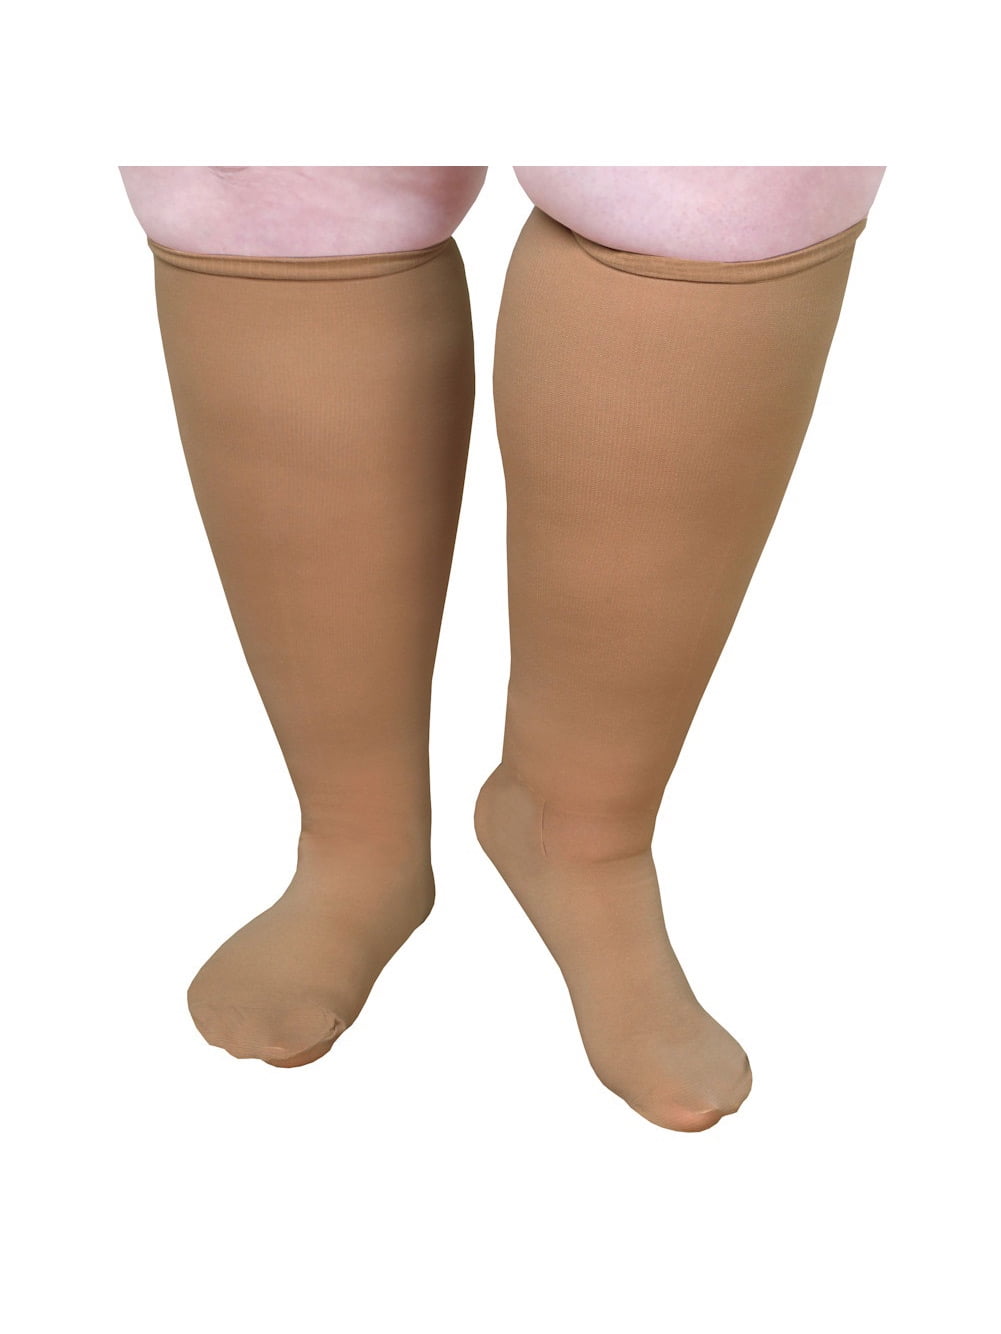 benefits of compression socks for calves